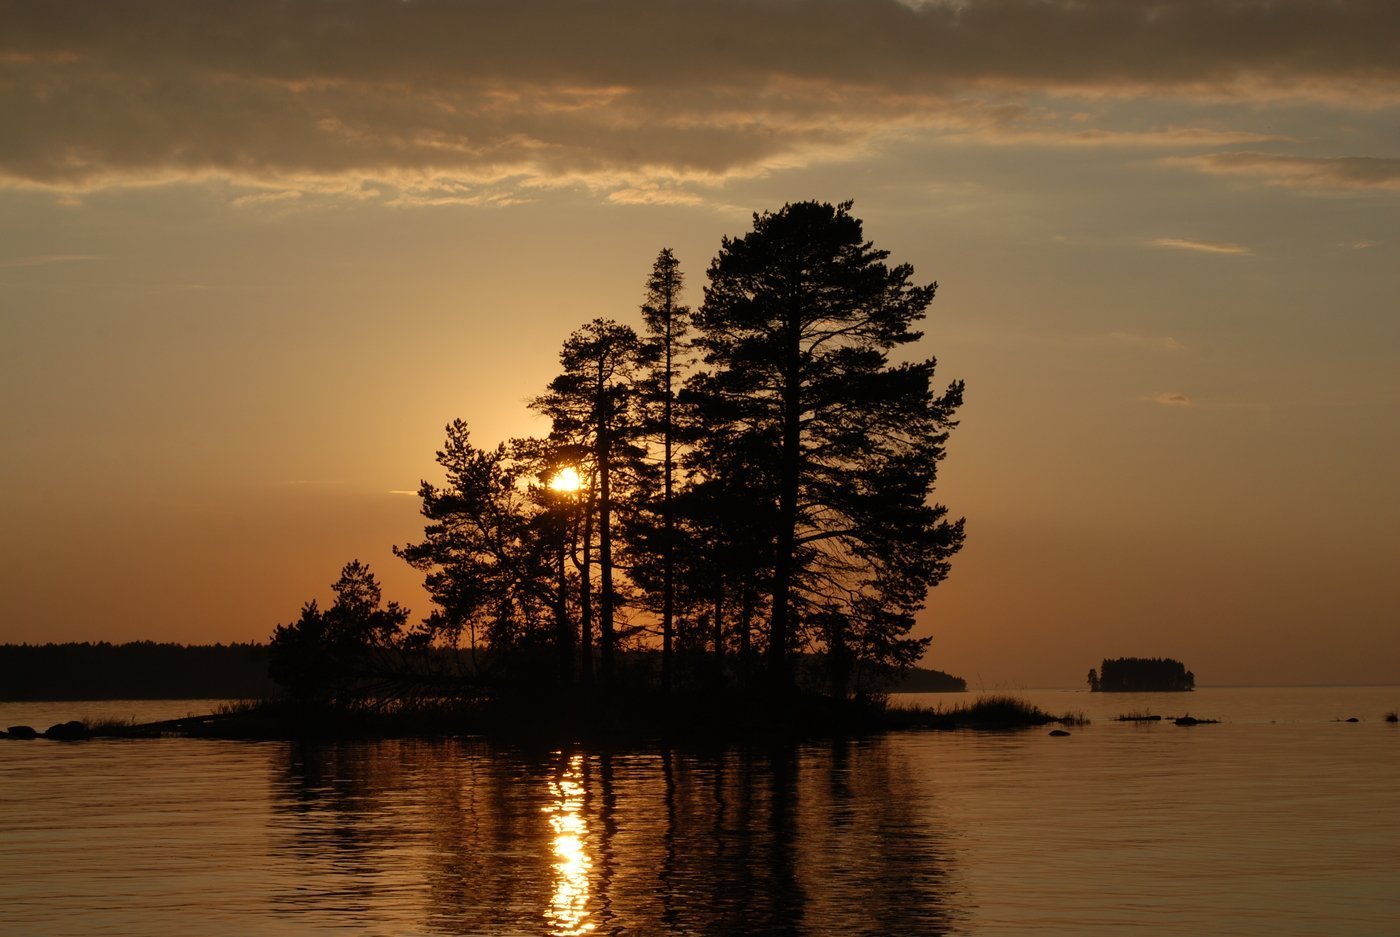 Онежское озеро г. Озеро Онего Карелия. Онега Онежское озеро. Онега река Карелия. Природа Карелии Онежское озеро.